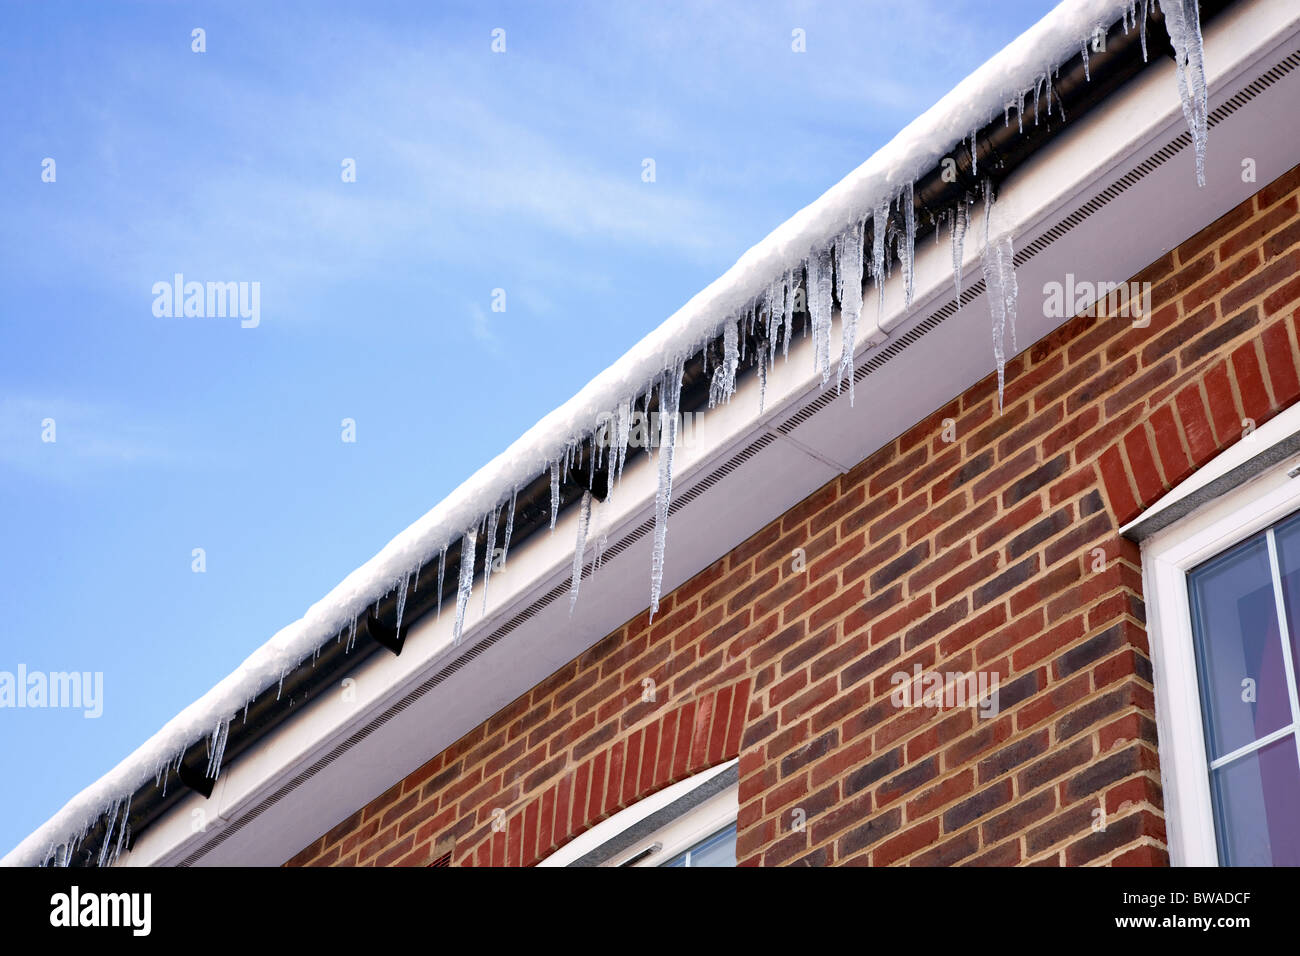 Imagen de invierno de carámbanos colgando de la gotera en el techo cubierto de nieve de una casa moderna. Foto de stock